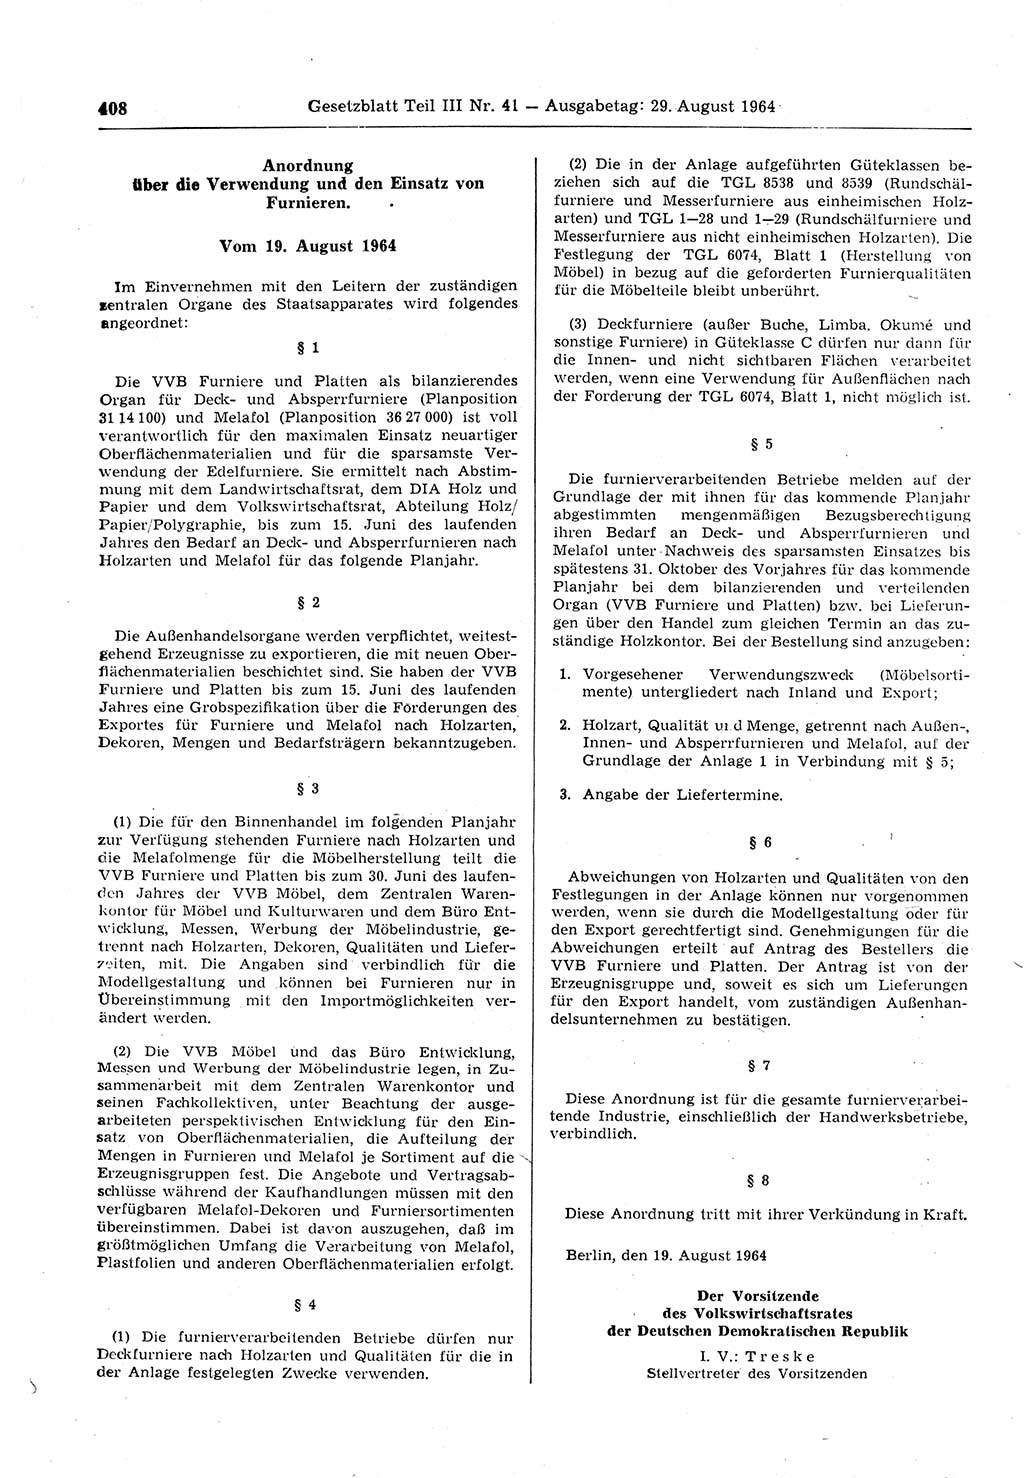 Gesetzblatt (GBl.) der Deutschen Demokratischen Republik (DDR) Teil ⅠⅠⅠ 1964, Seite 408 (GBl. DDR ⅠⅠⅠ 1964, S. 408)